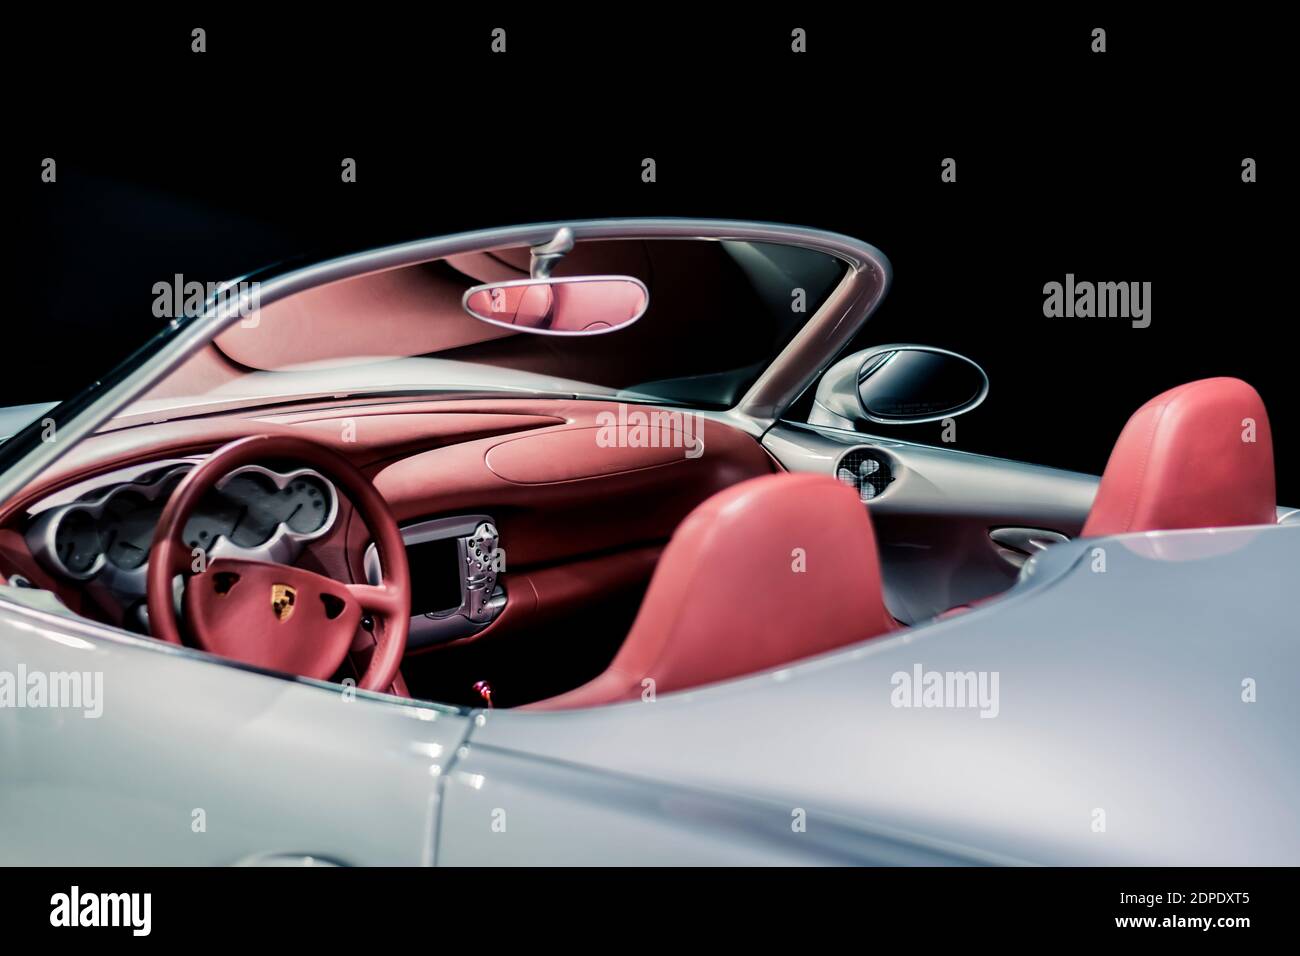 STOCCARDA, Germania 6 marzo 2020: La Porsche Boxster Studie (cabrio) 1993 al Porsche Museum. Interni in pelle rossa, specchietto retrovisore asimmetrico. Foto Stock